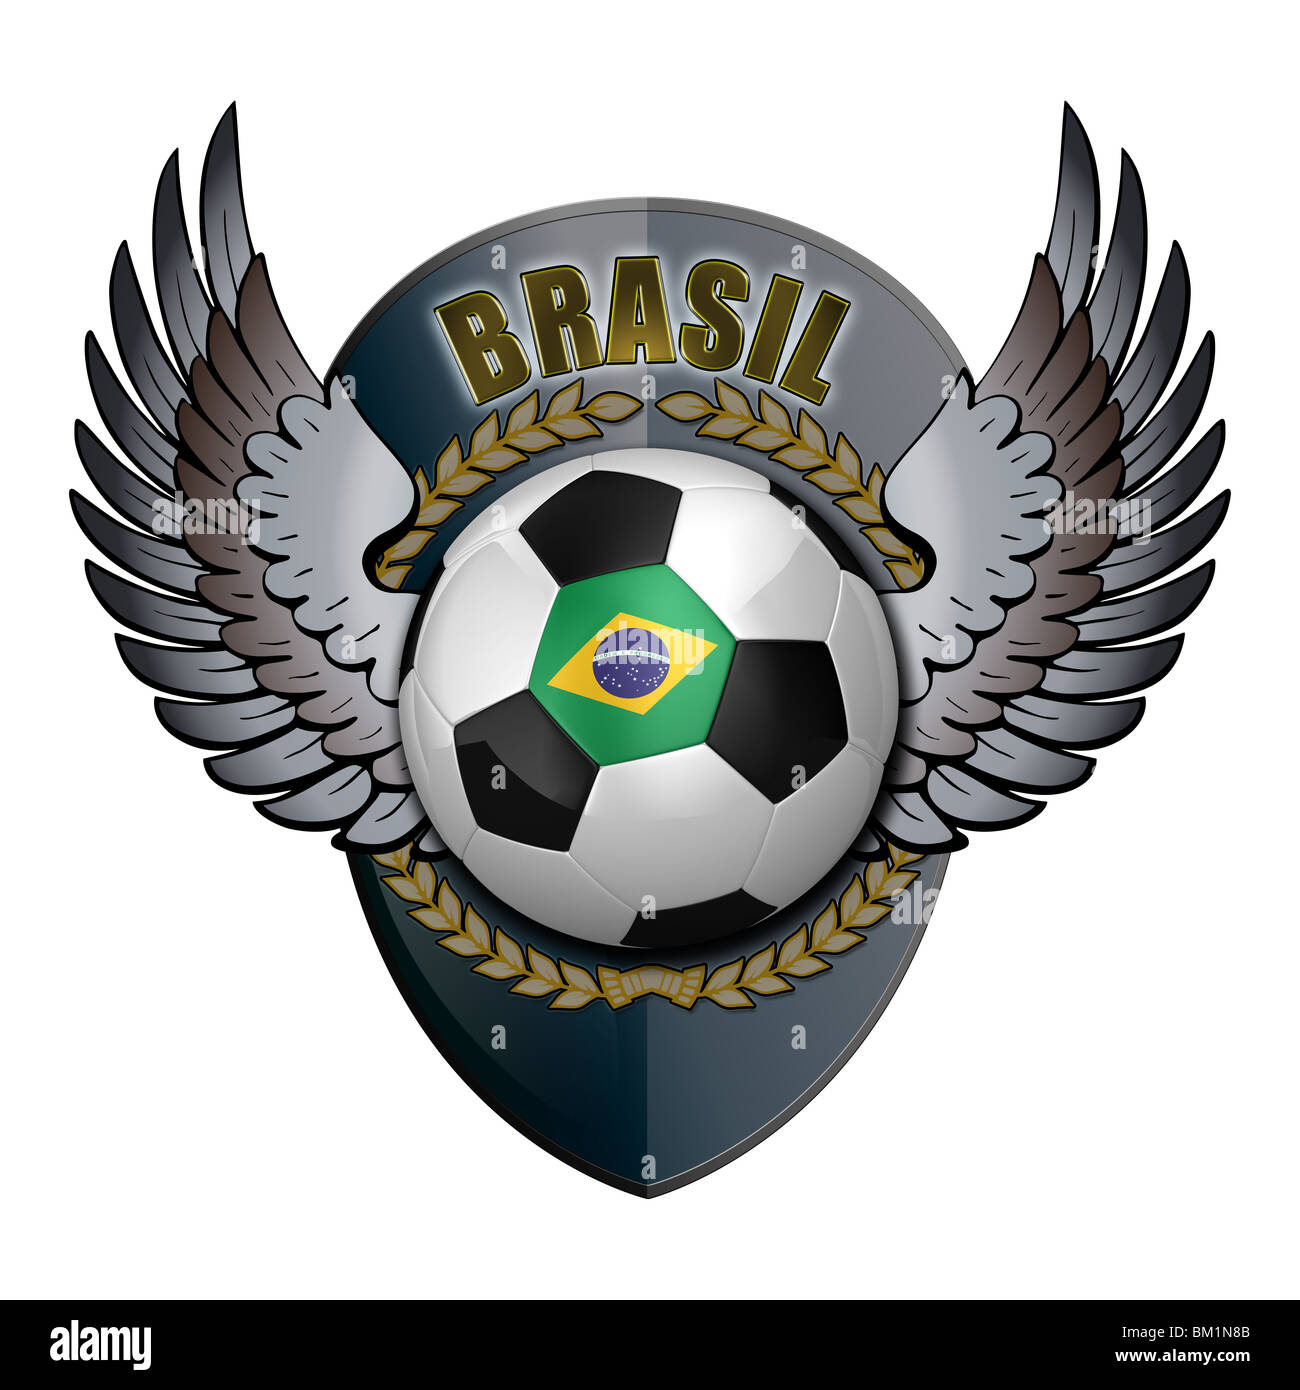 Brasil - Pins de escudos/insiginas de equipos de fútbol